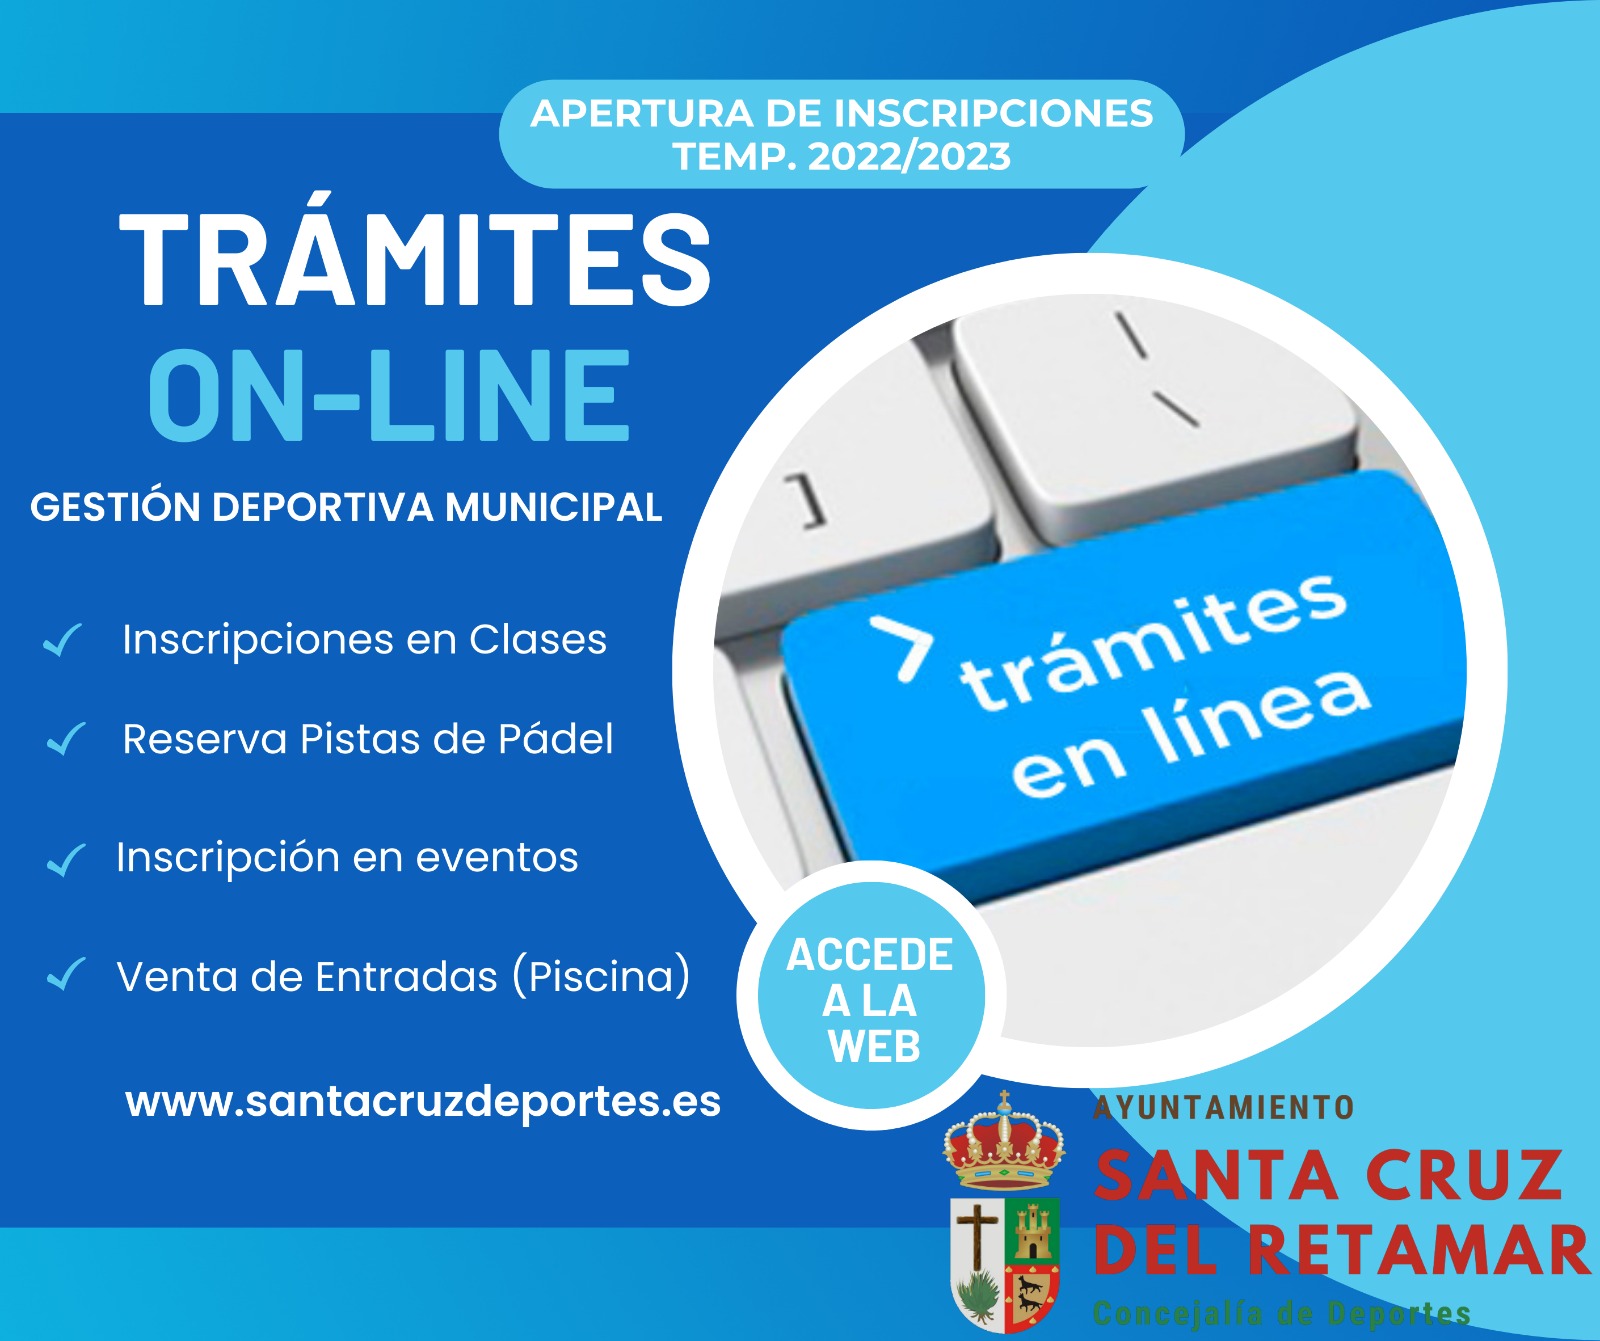 Trámites online - Concejalía de Deportes del Ayuntamiento de Santa Cruz del Retamar